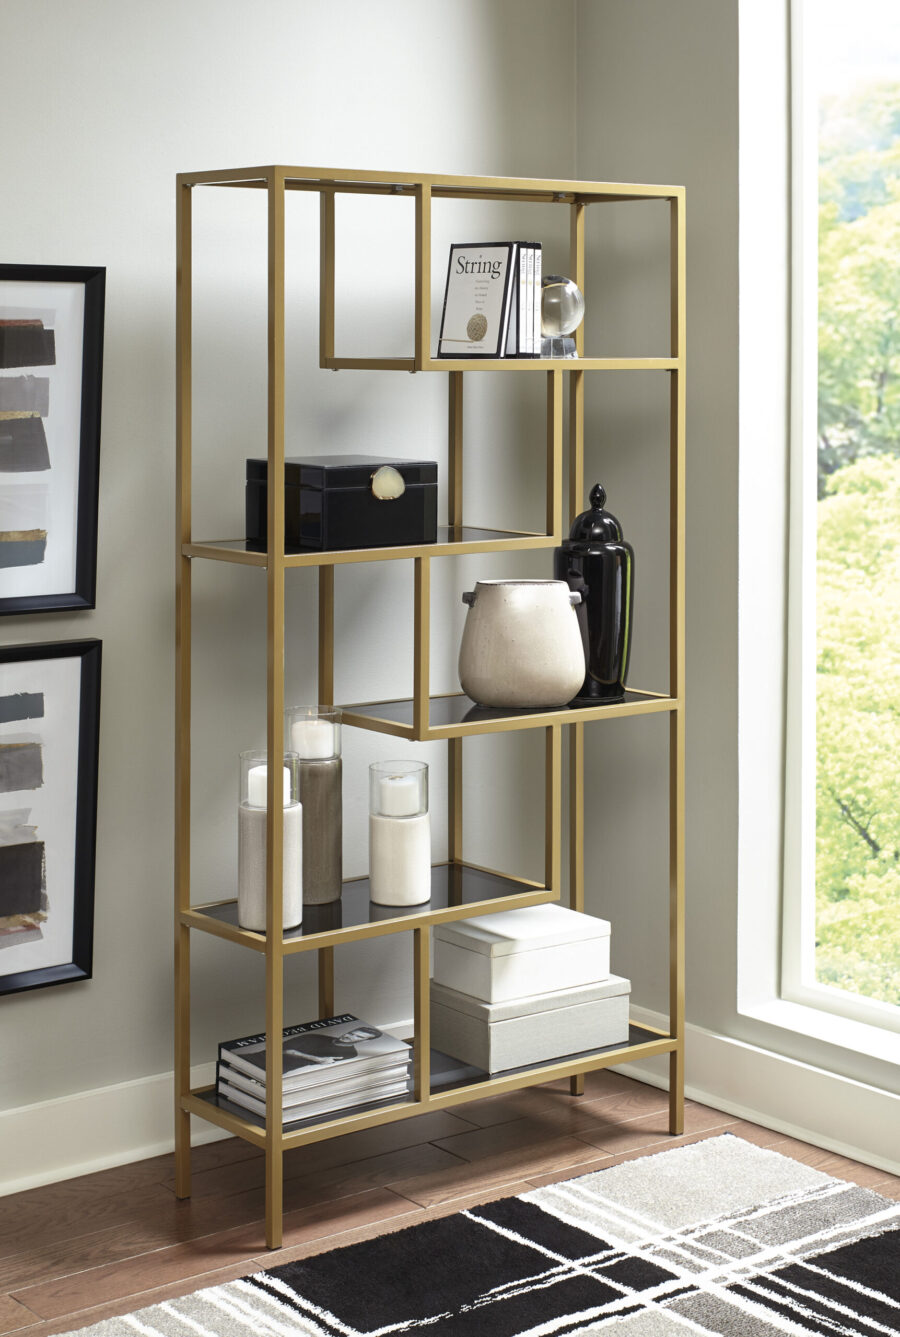 Ashley Frankwell riiul on elegantse disainiga, mis sobitub ideaalselt kaasaegsetes elu- ja kontoriruumides. Riiulit iseloomustab metallist kuldne karkass ja hallid toonitud klaasist pealisplaadid, mis lisavad kaunist aktsenti.